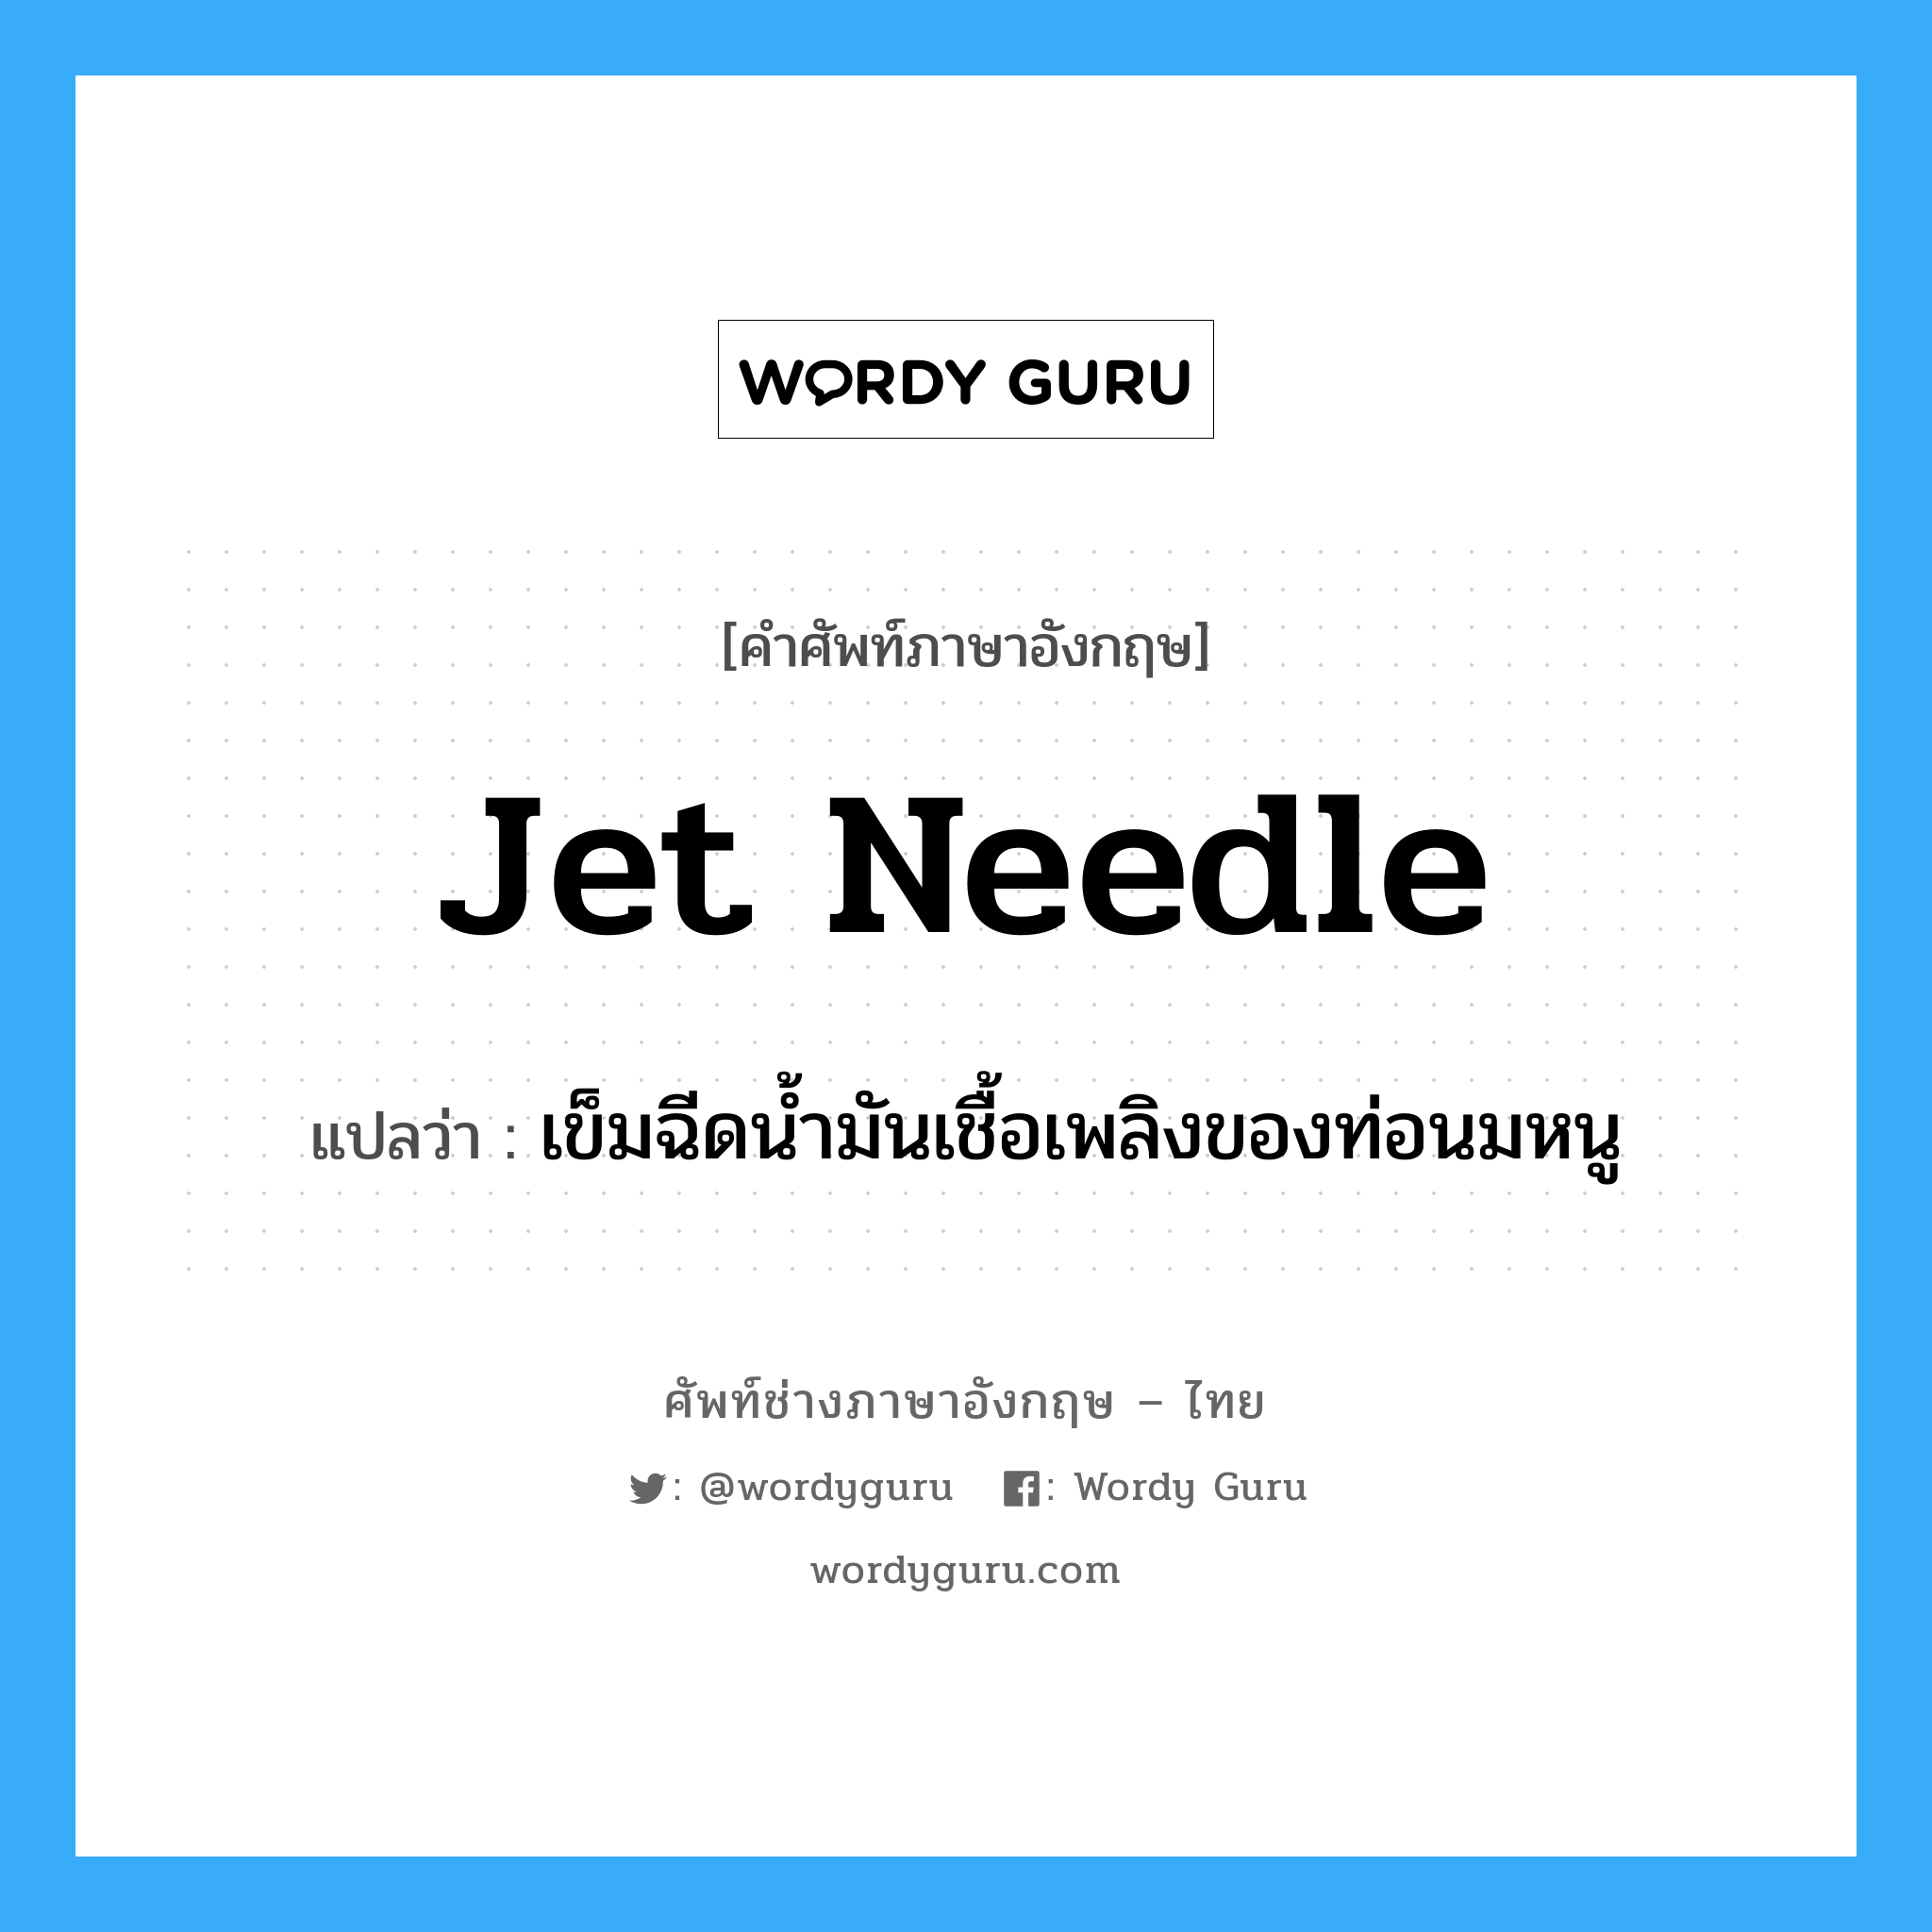 jet needle แปลว่า?, คำศัพท์ช่างภาษาอังกฤษ - ไทย jet needle คำศัพท์ภาษาอังกฤษ jet needle แปลว่า เข็มฉีดน้ำมันเชื้อเพลิงของท่อนมหนู